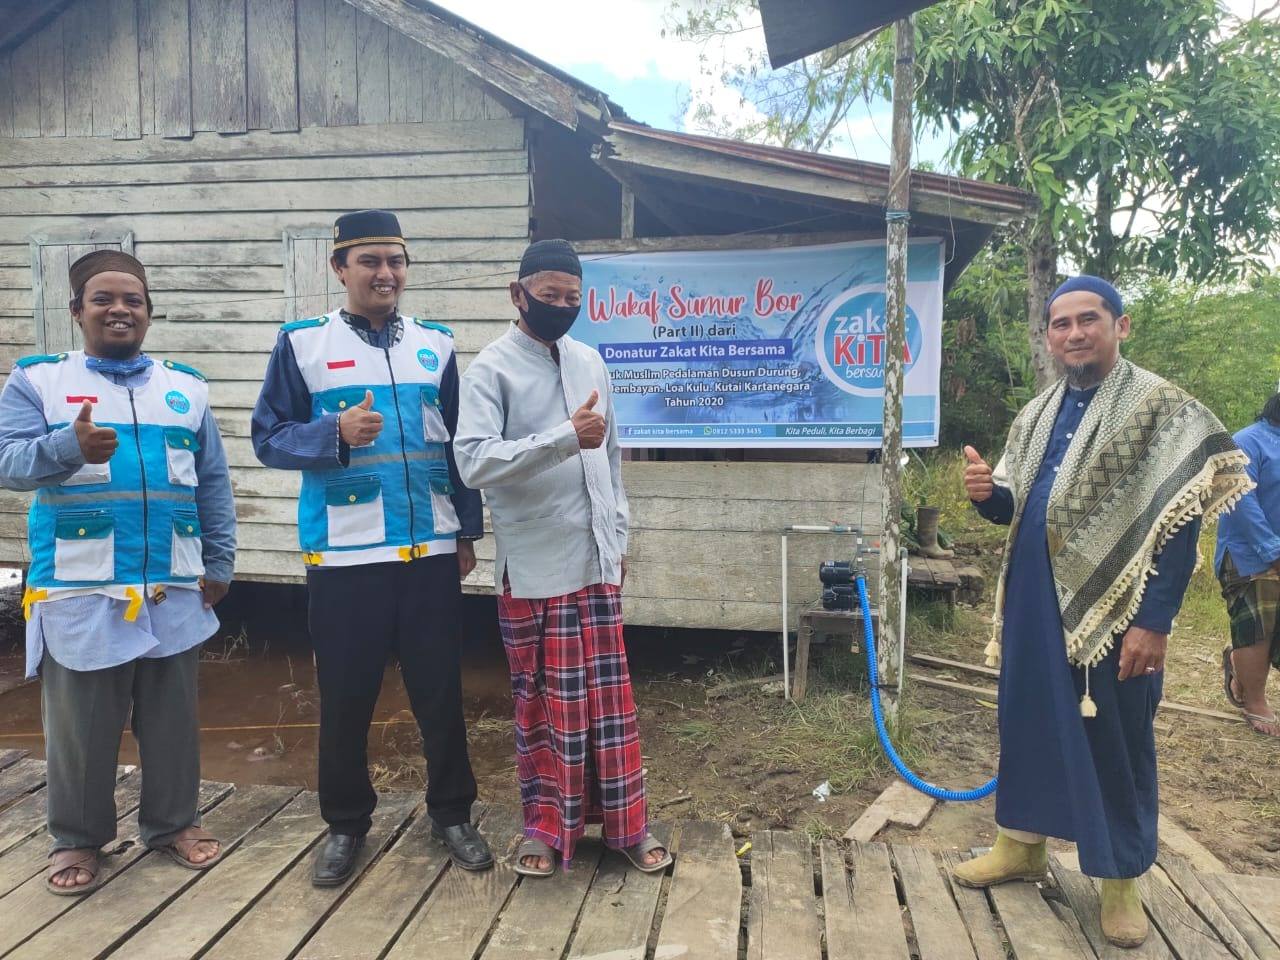 Lembaga Zakat Kita Bersama Launching Wakaf Sumur Bor untuk Muslim di Pedalaman Kukar